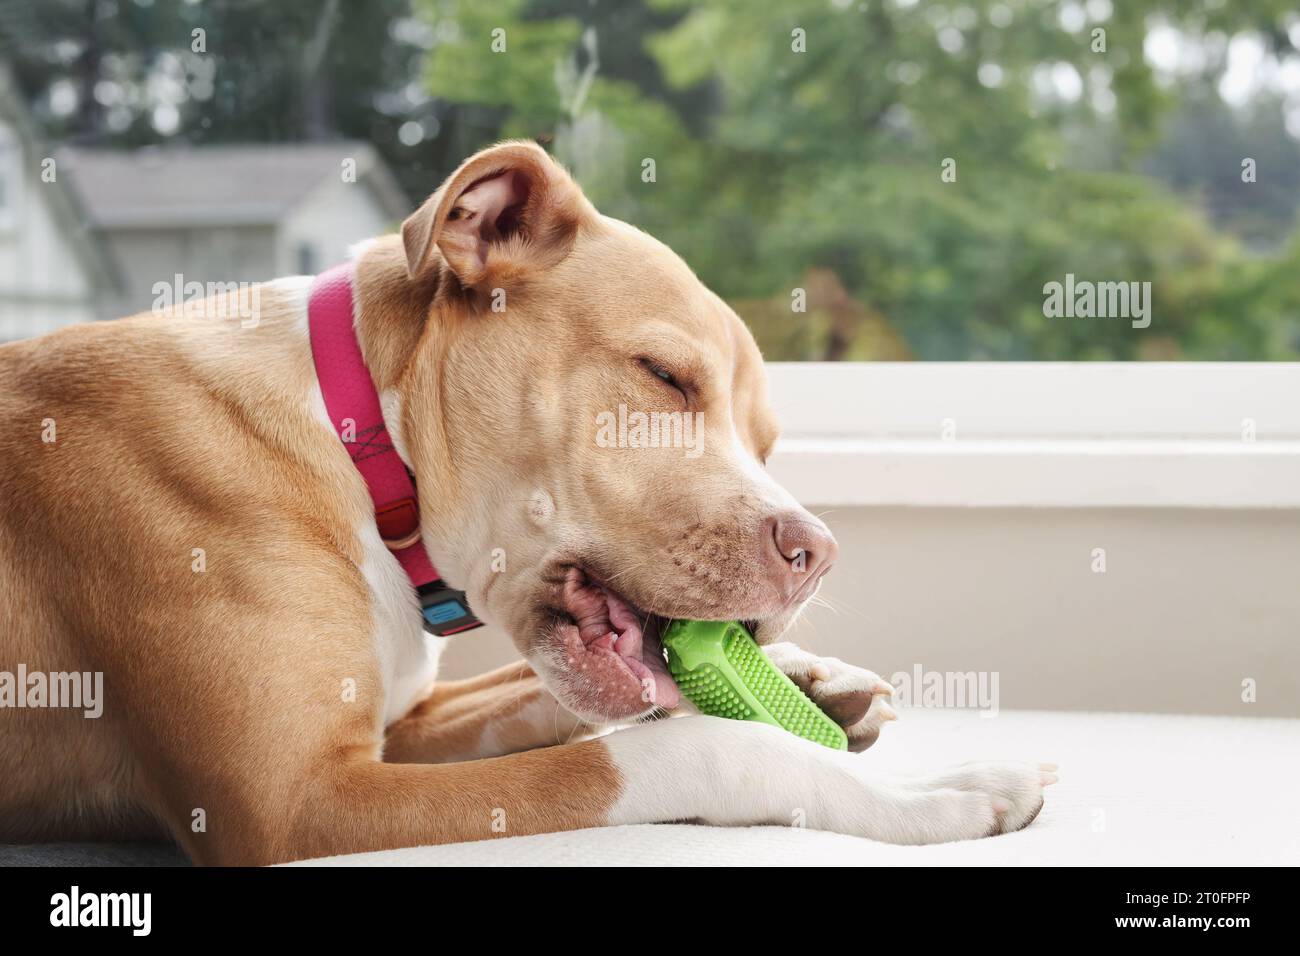 Glücklicher Hund mit Kauspielzeug auf dem Sessel. Seitenprofil eines grossen Welpen, der auf grünes Kautschuk-Dentalspielzeug mit Borsten beißt. Konzept für die Auswahl von Spielzeug zum sicheren Kauen Stockfoto